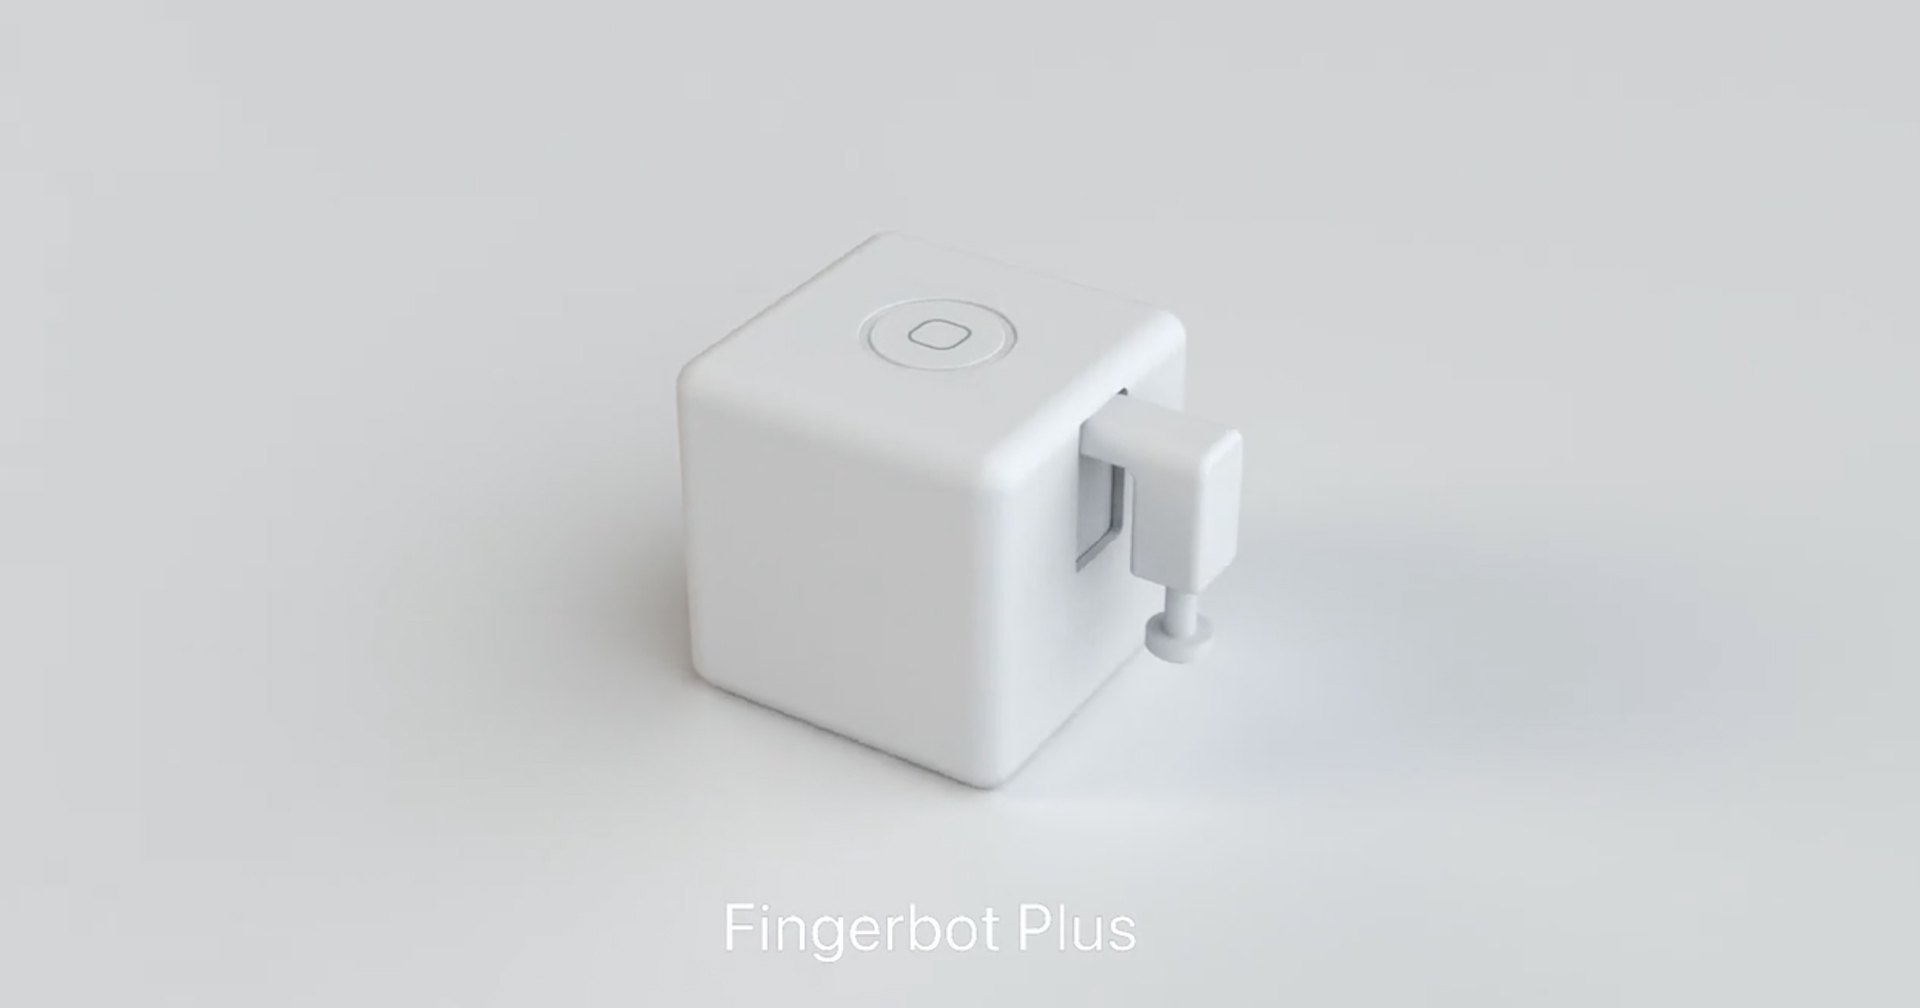 เครื่องใช้ไฟฟ้าเก่าก็ฉลาดได้ด้วย Fingerbot Plus